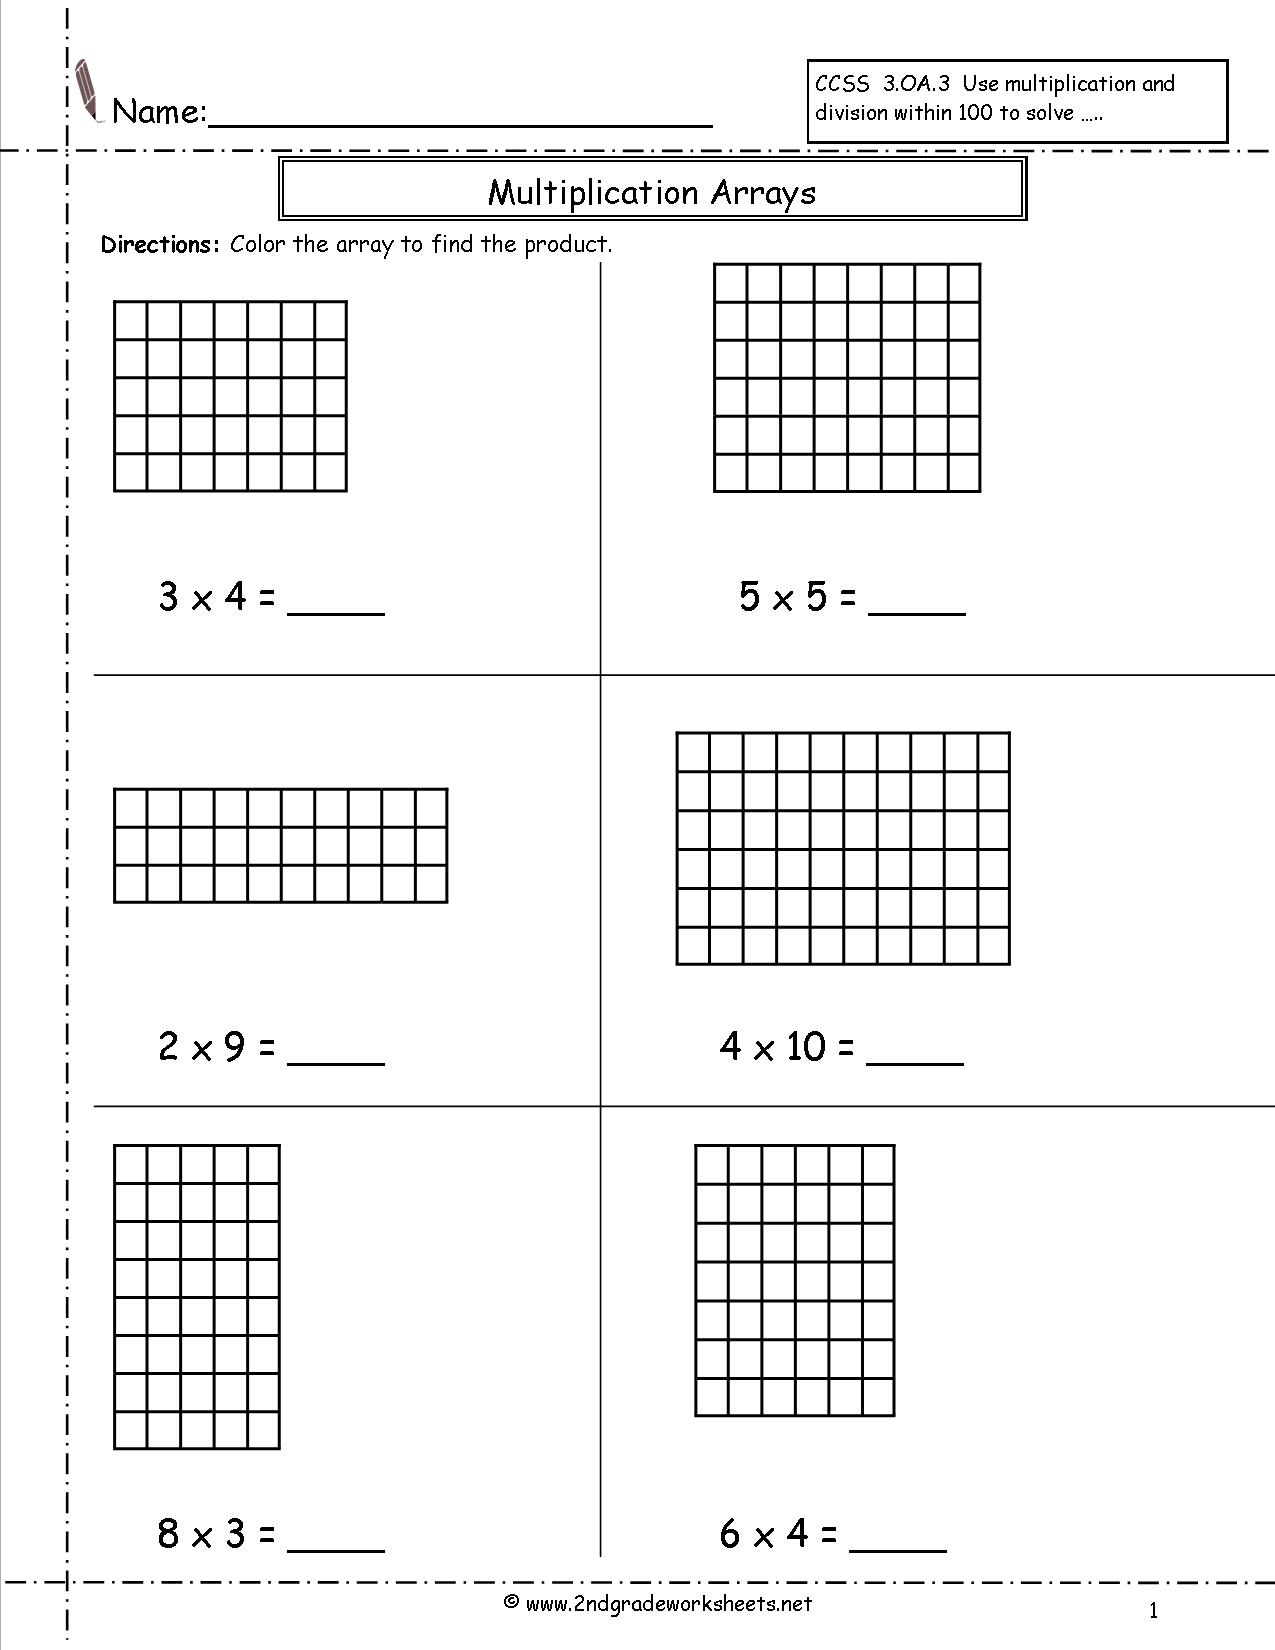 Multiplication Arrays Worksheets Grade 2 Image